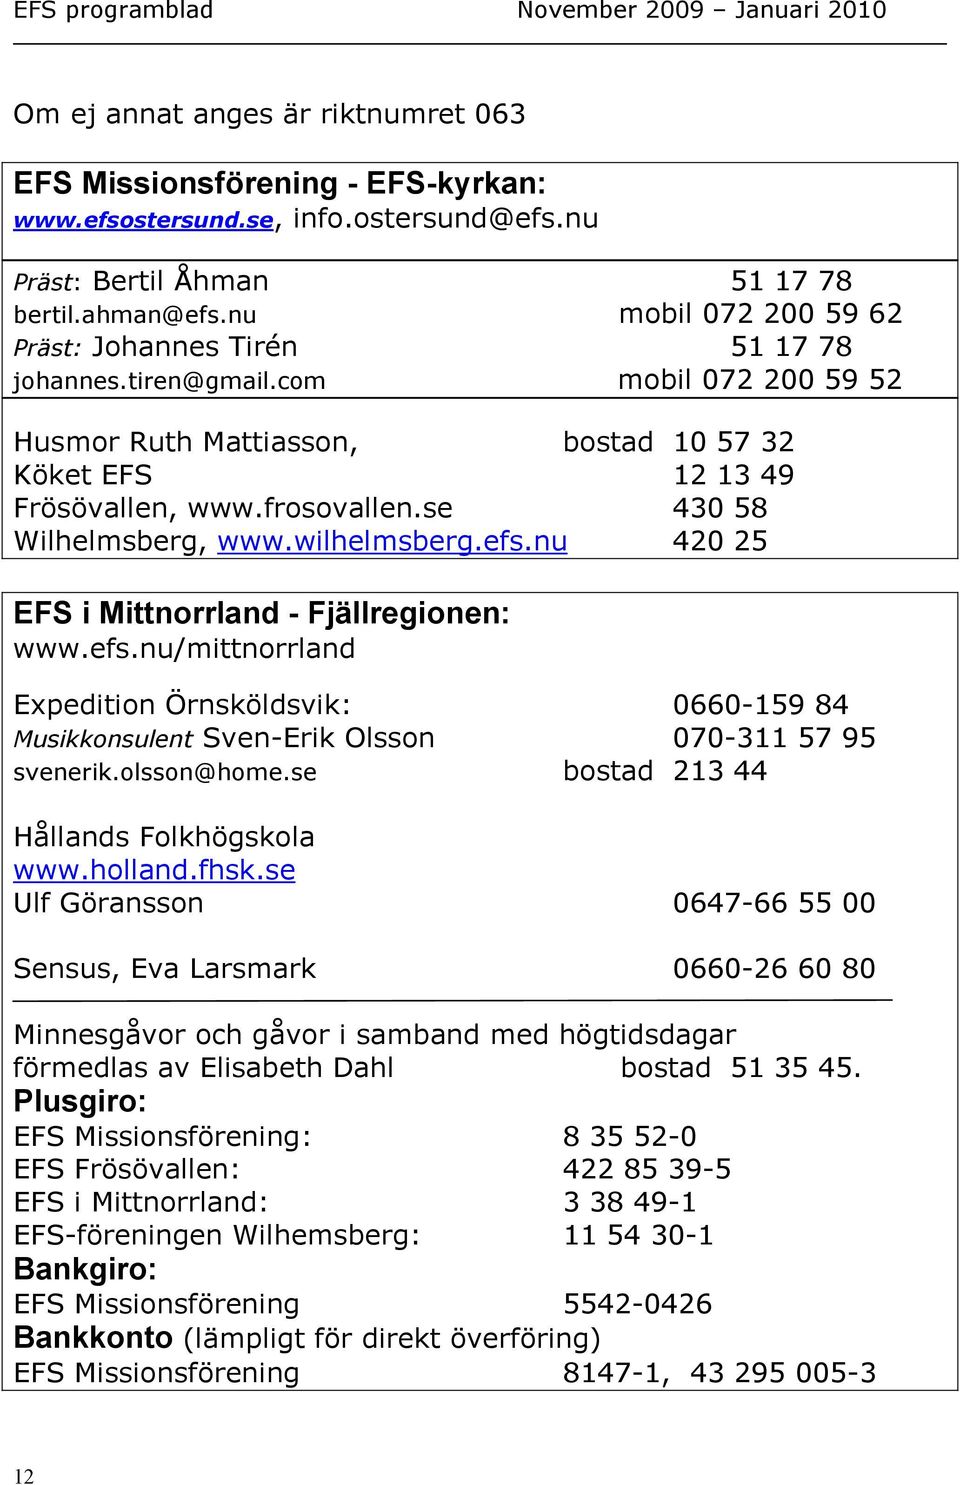 se 430 58 Wilhelmsberg, www.wilhelmsberg.efs.nu 420 25 EFS i Mittnorrland - Fjällregionen: www.efs.nu/mittnorrland Expedition Örnsköldsvik: 0660-159 84 Musikkonsulent Sven-Erik Olsson 070-311 57 95 svenerik.